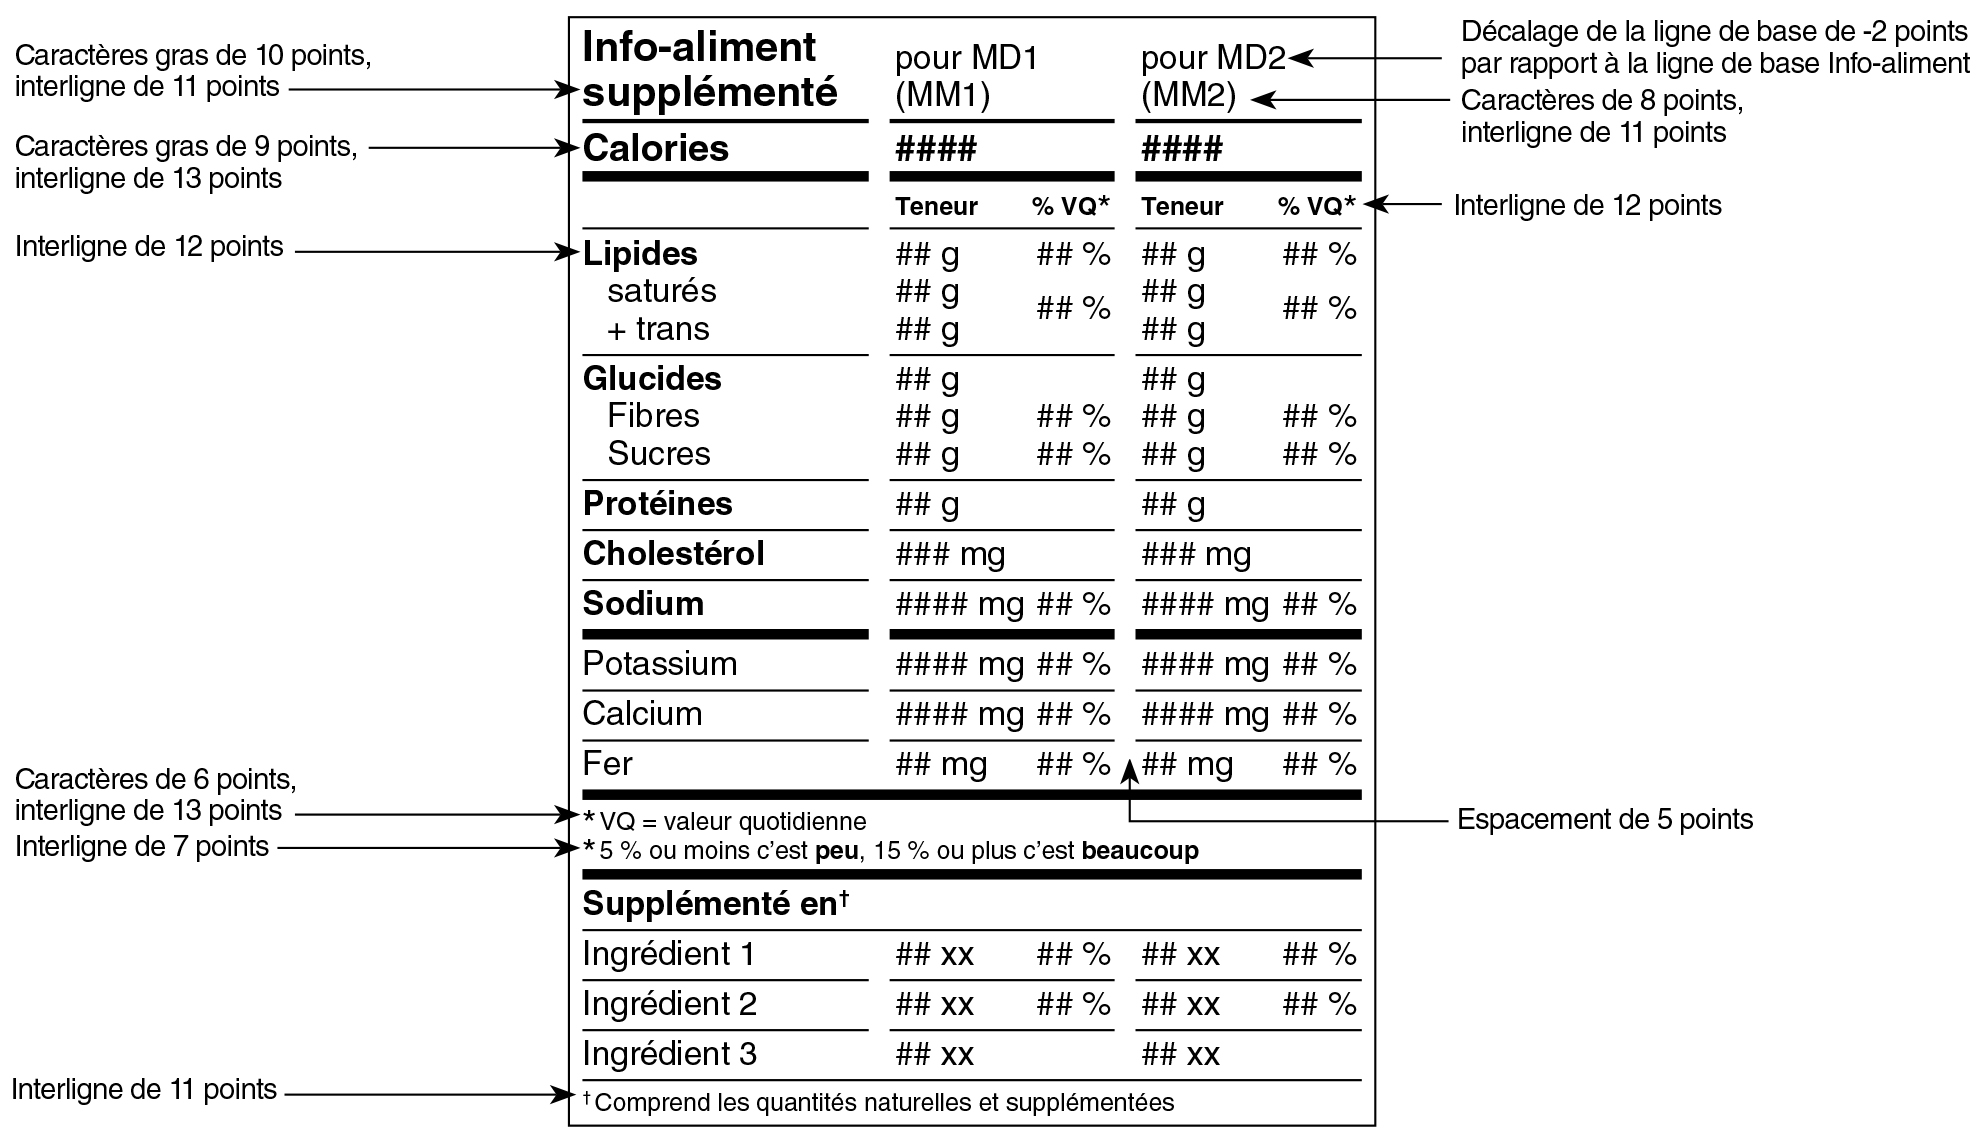 Modèle composé français du tableau des renseignements sur les aliments supplémentés avec indications. Version texte ci-dessous.